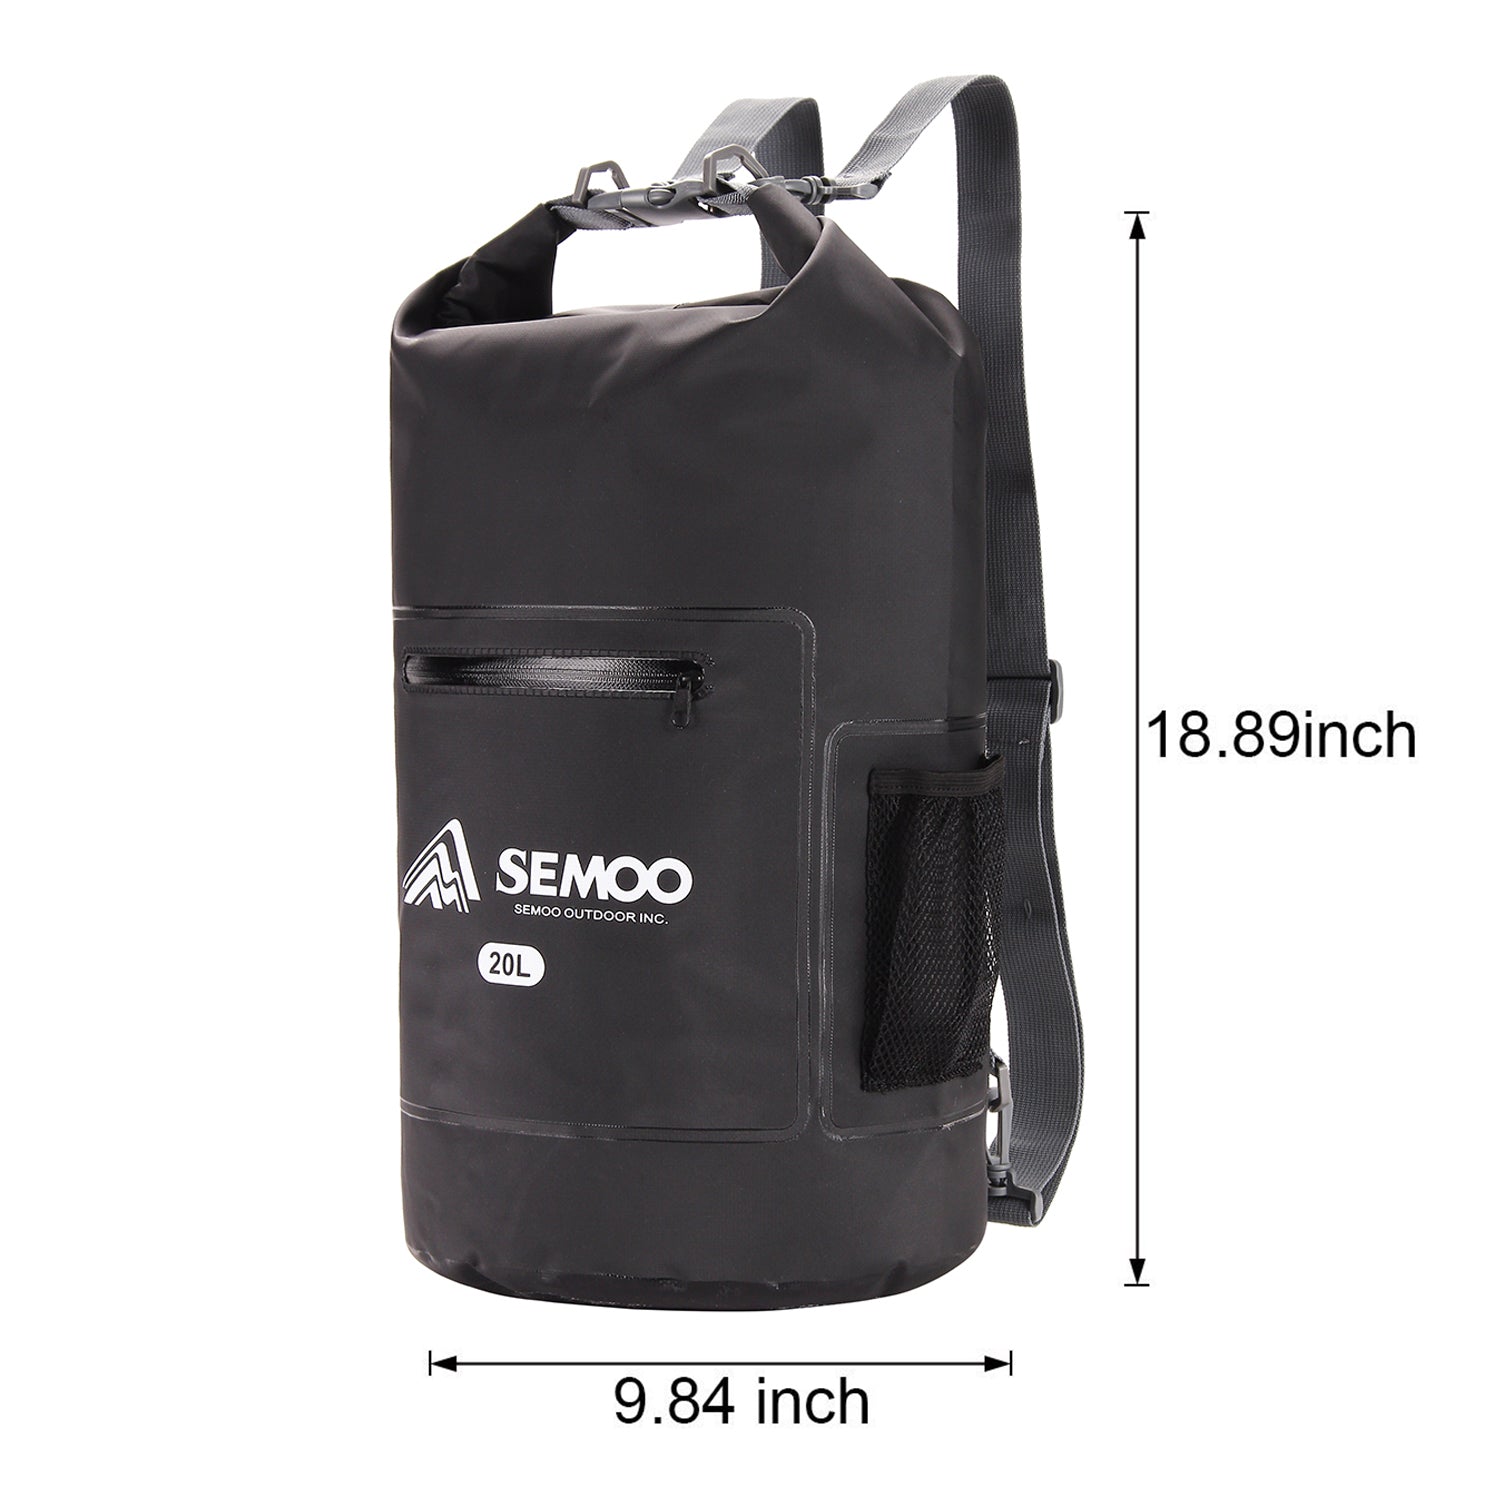 SEMOO Floating Waterproof Dry Bag 20L, Roll Top Sack Keeps Gear